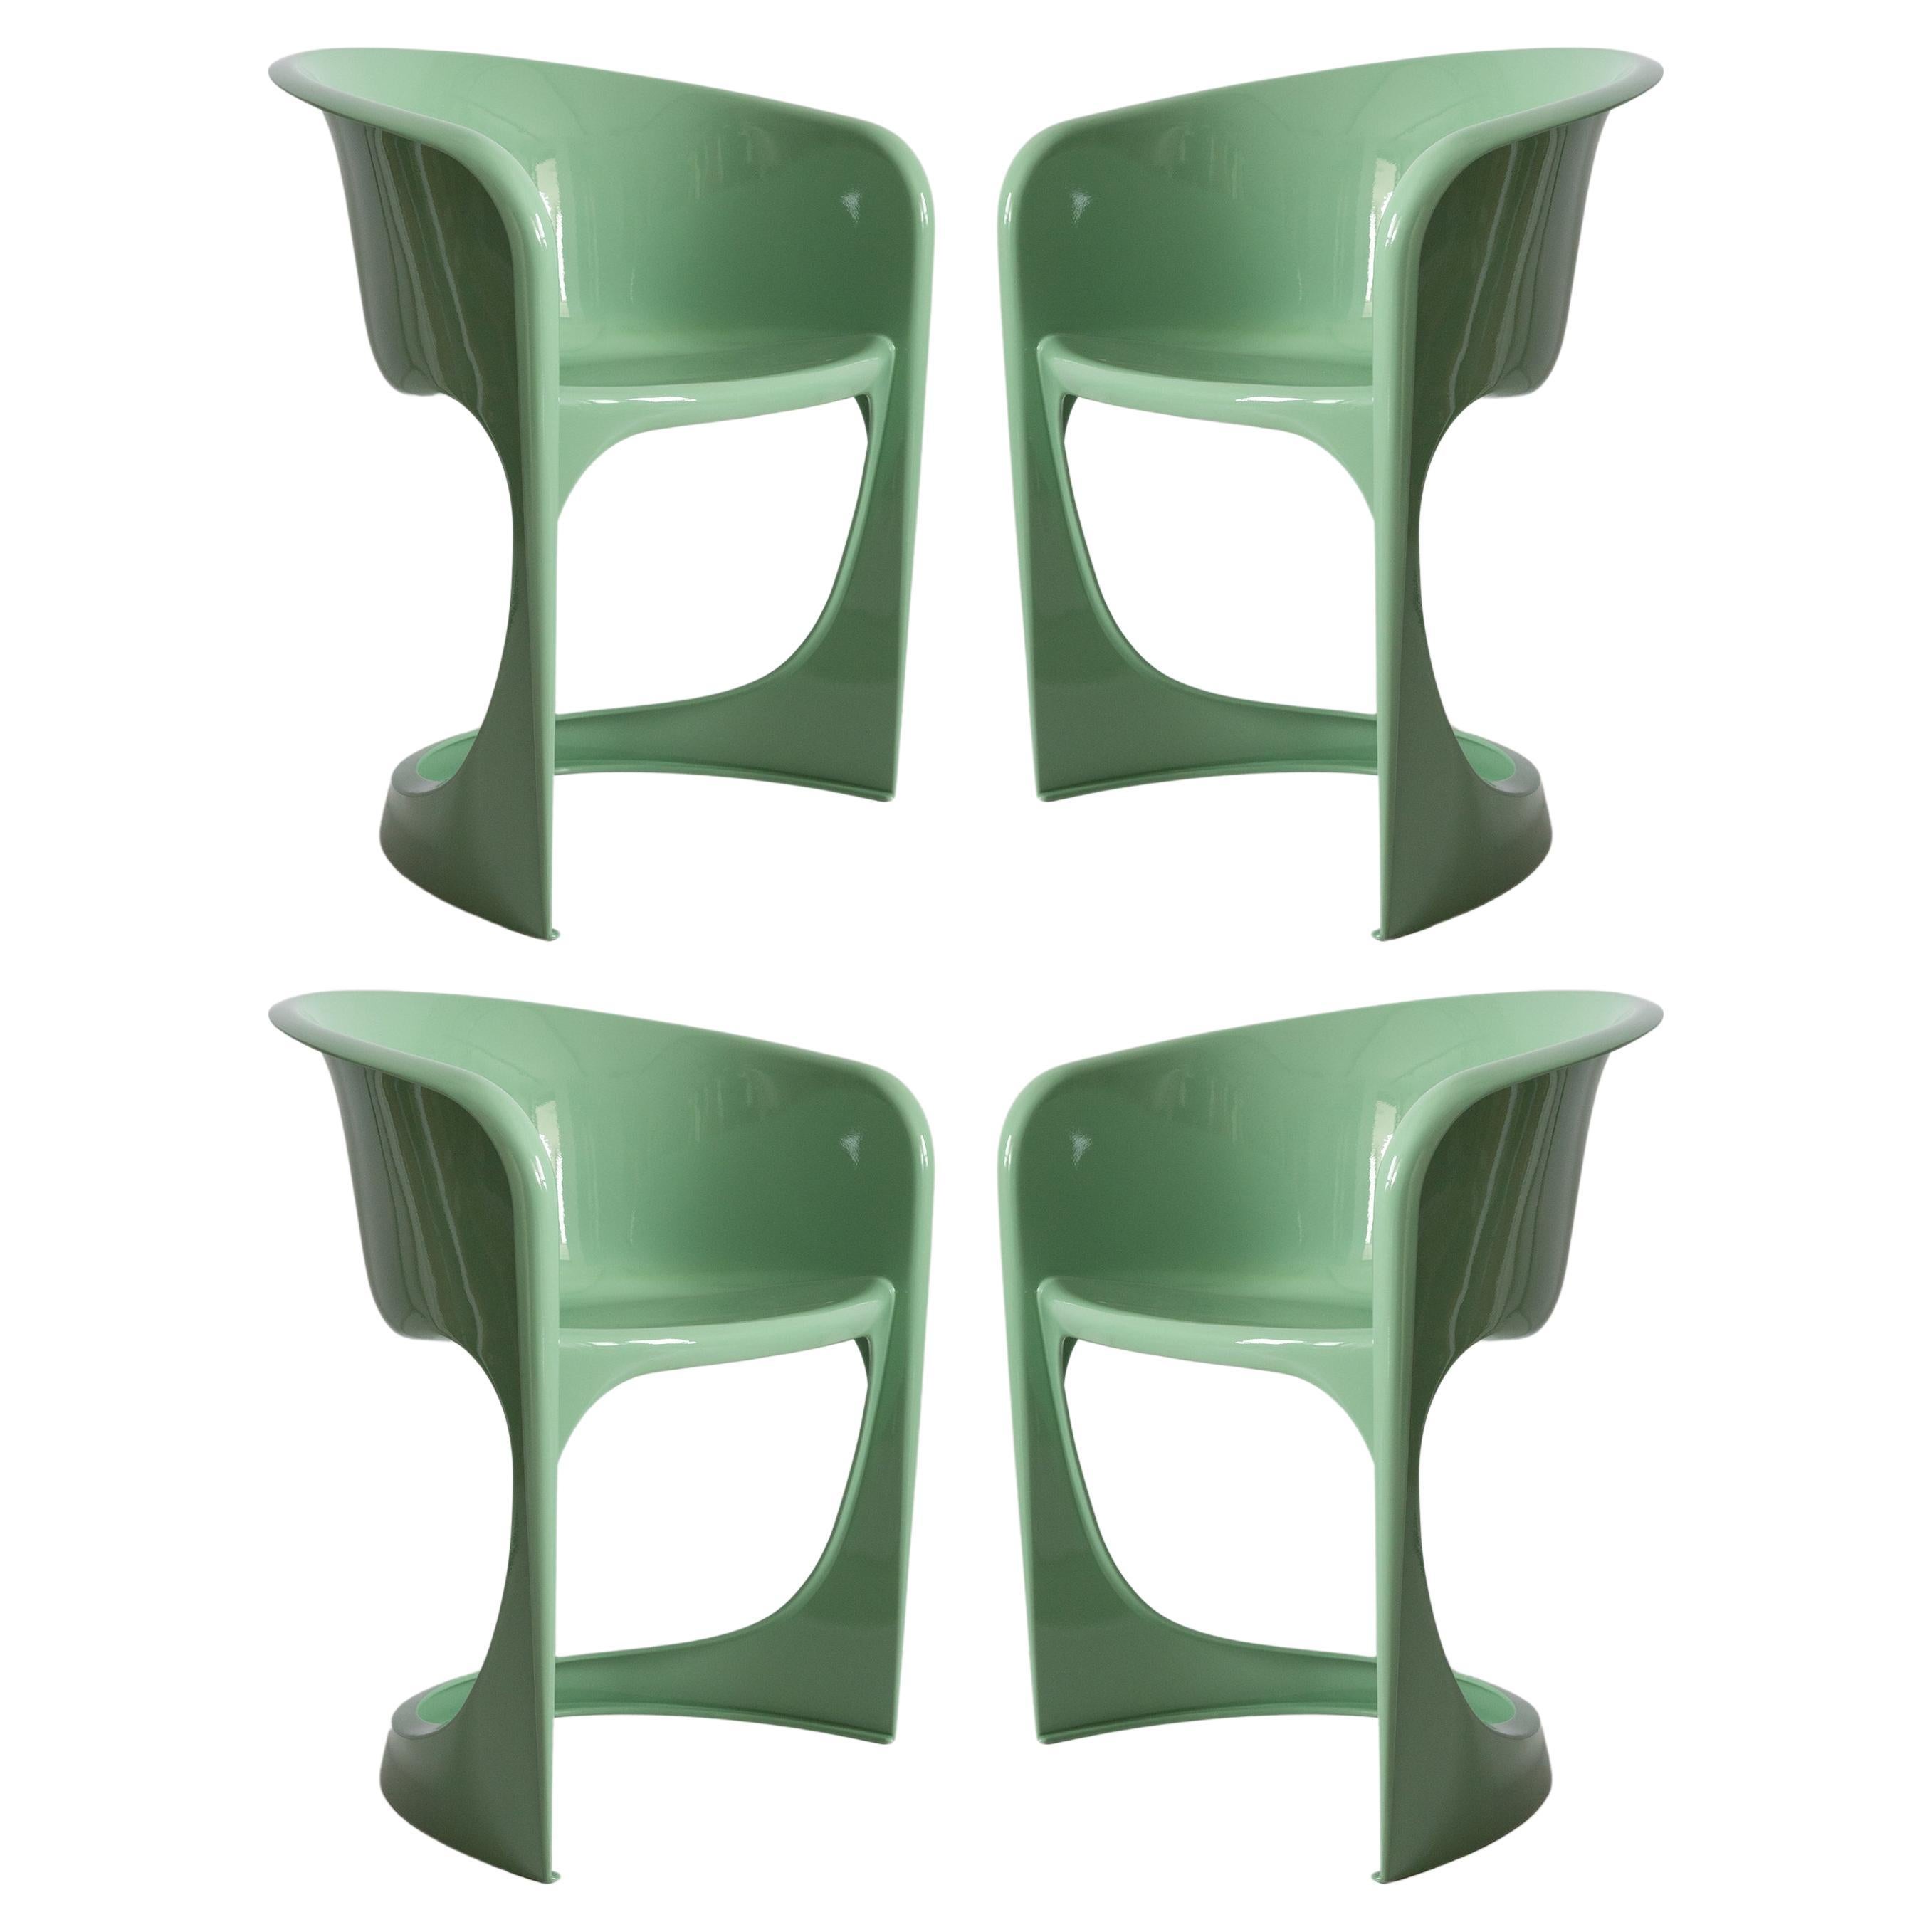 Ensemble de quatre chaises Cado du milieu du siècle, vert menthe brillant, Steen Østergaard, 1974